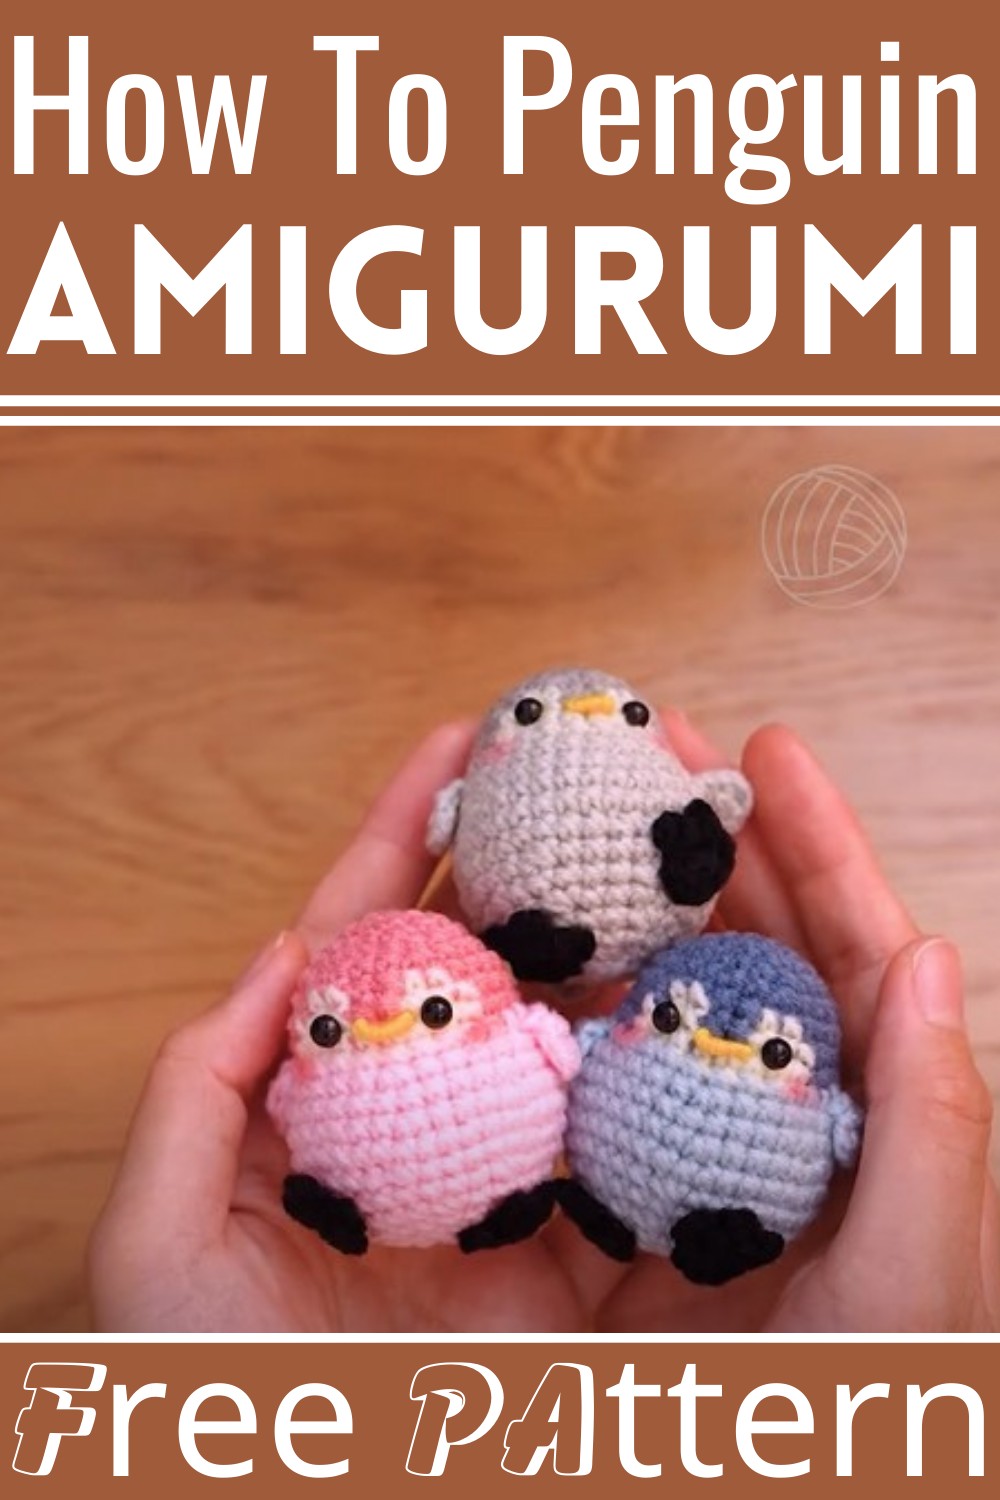 How To Crochet Penguin Amigurumi